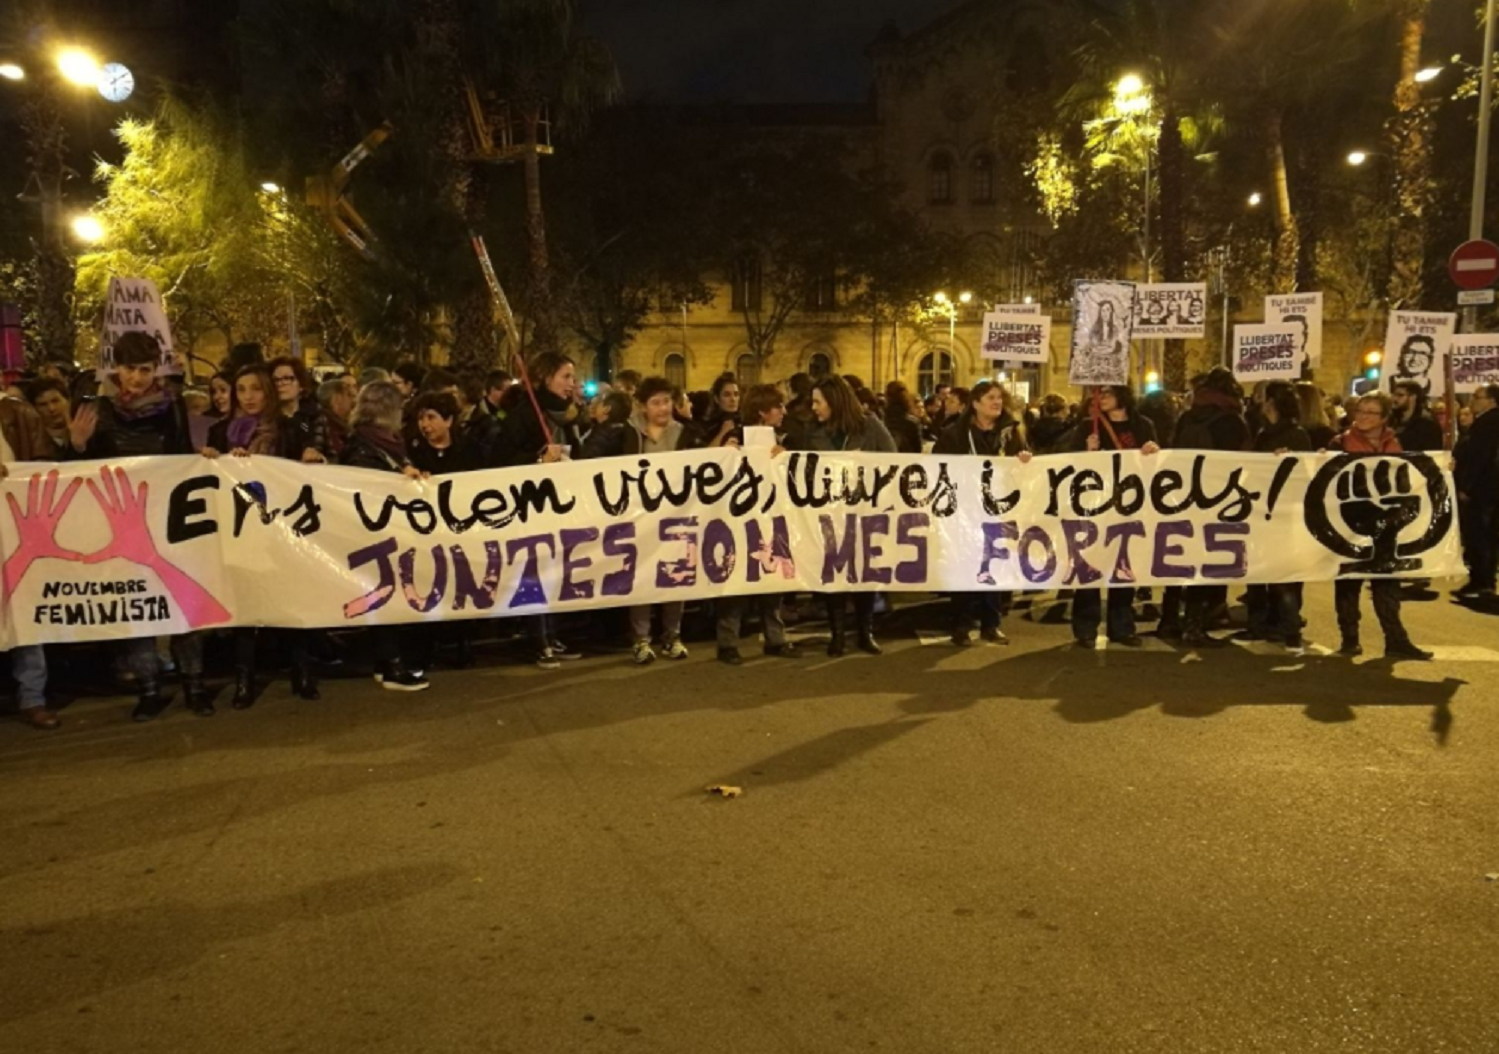 Barcelona clama contra la violència masclista: "Ens volem vives"